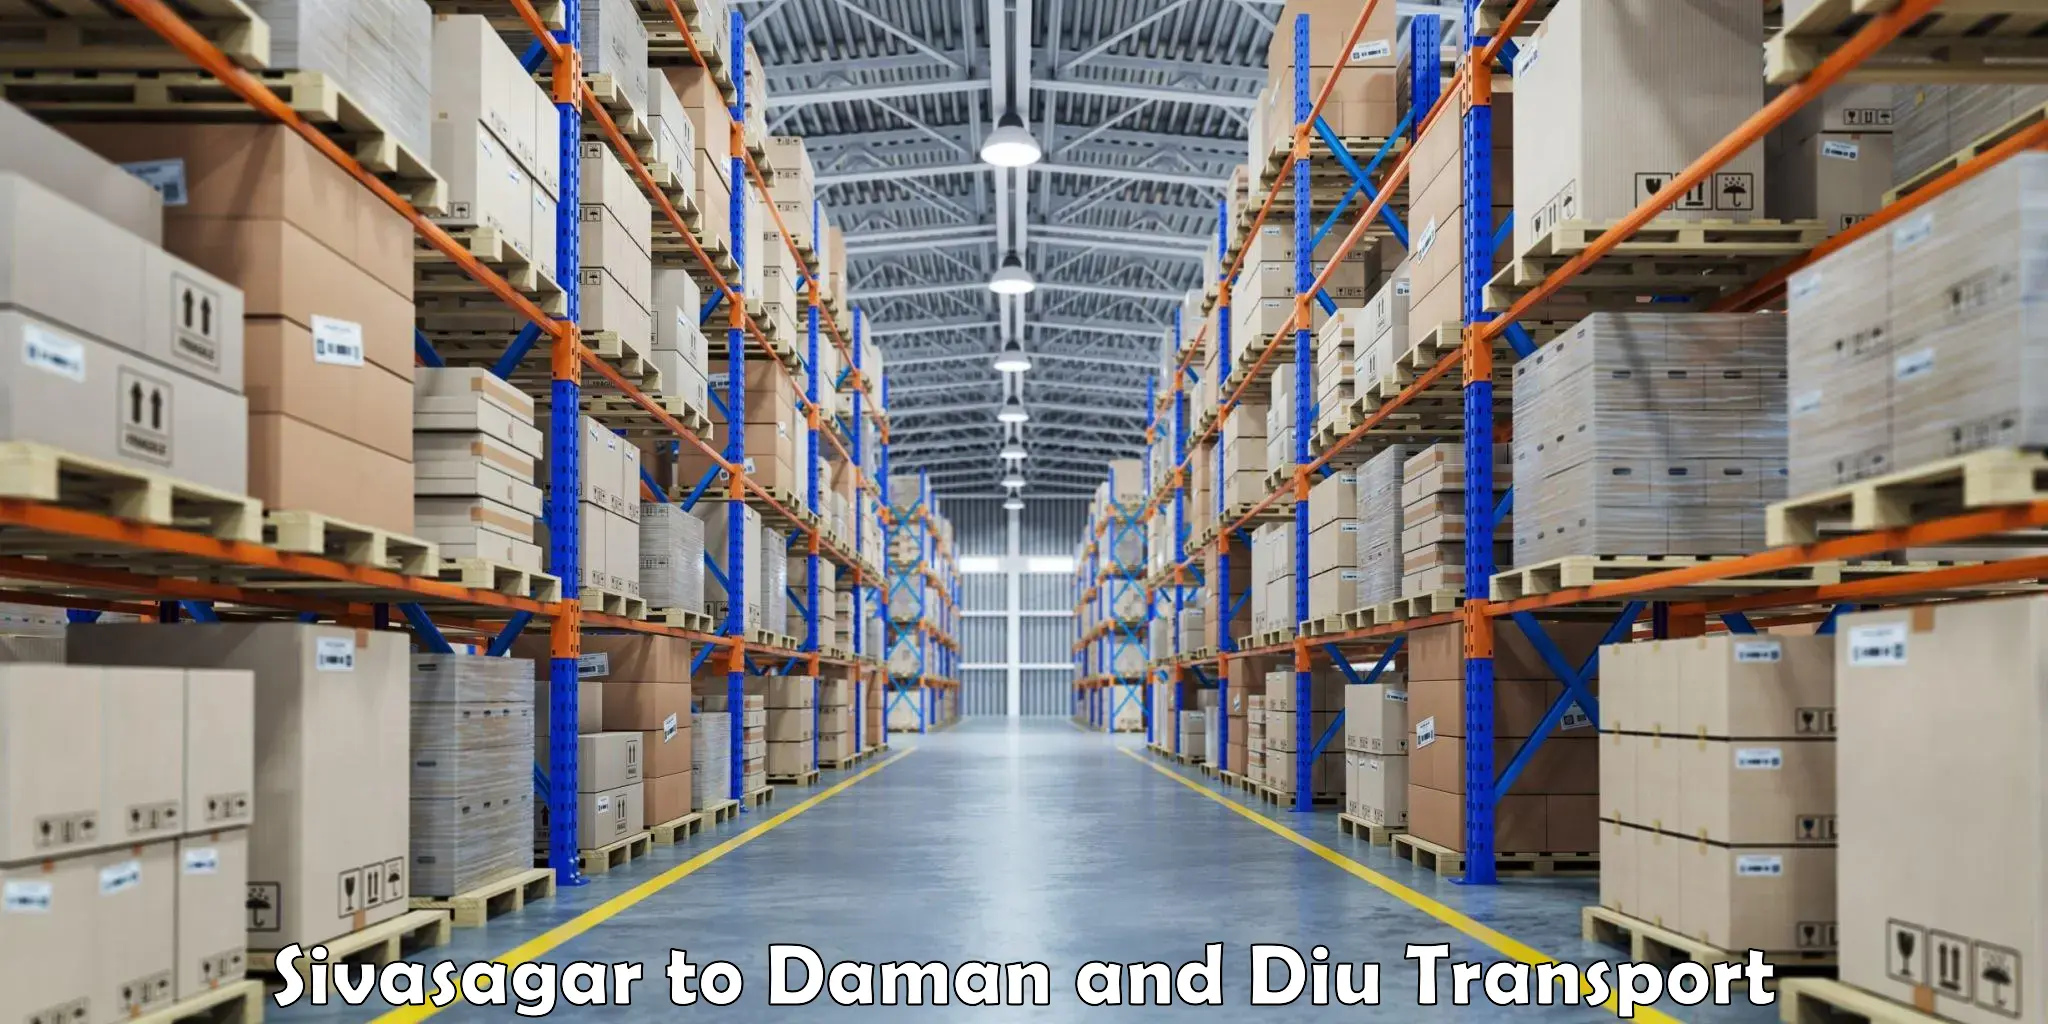 Furniture transport service Sivasagar to Diu